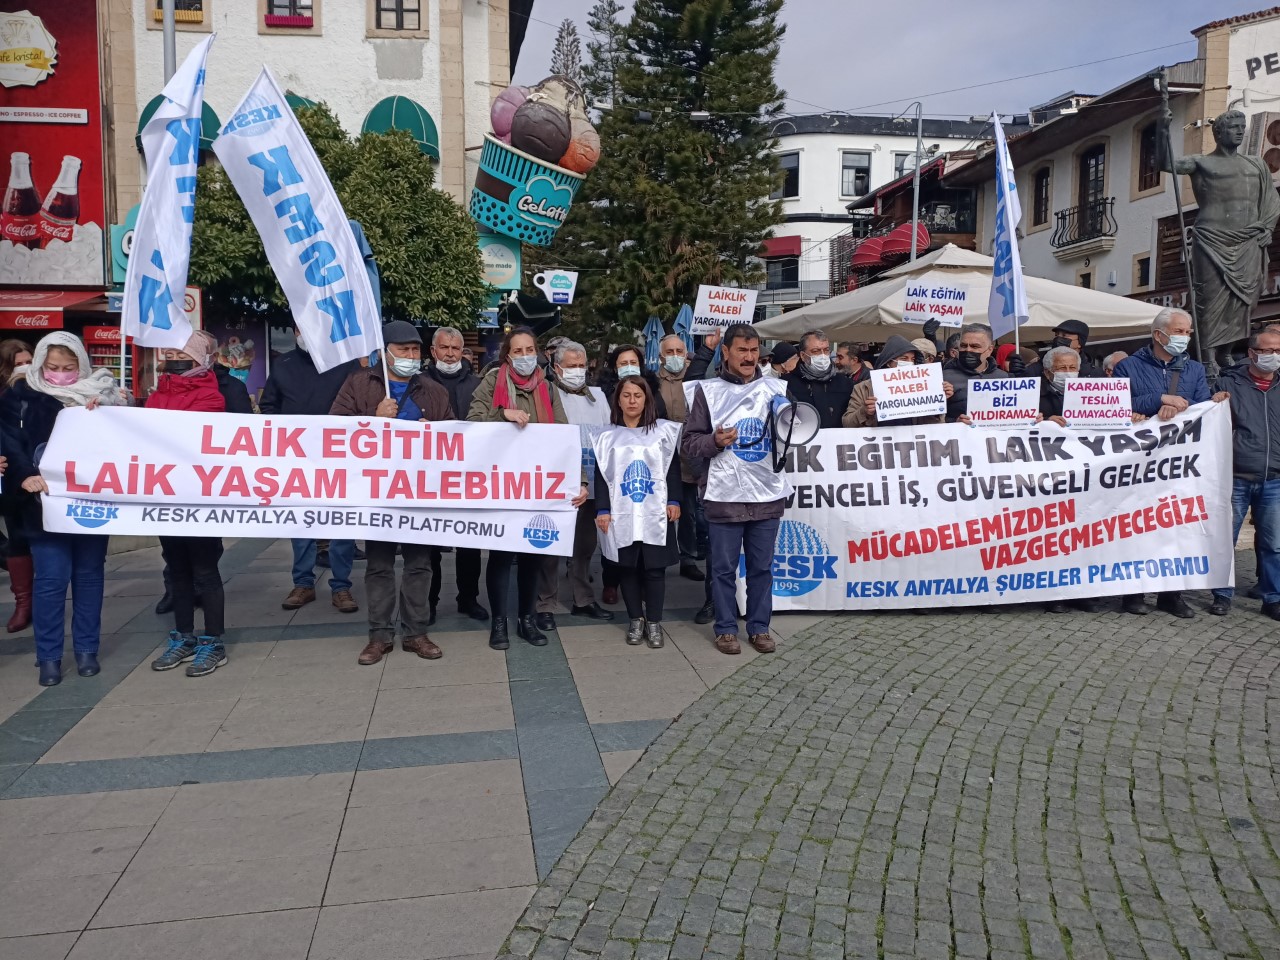 KESK Antalya Şubeler Platformu: Laik Eğitim ve Laik Yaşam Talebimiz Yargılanamaz